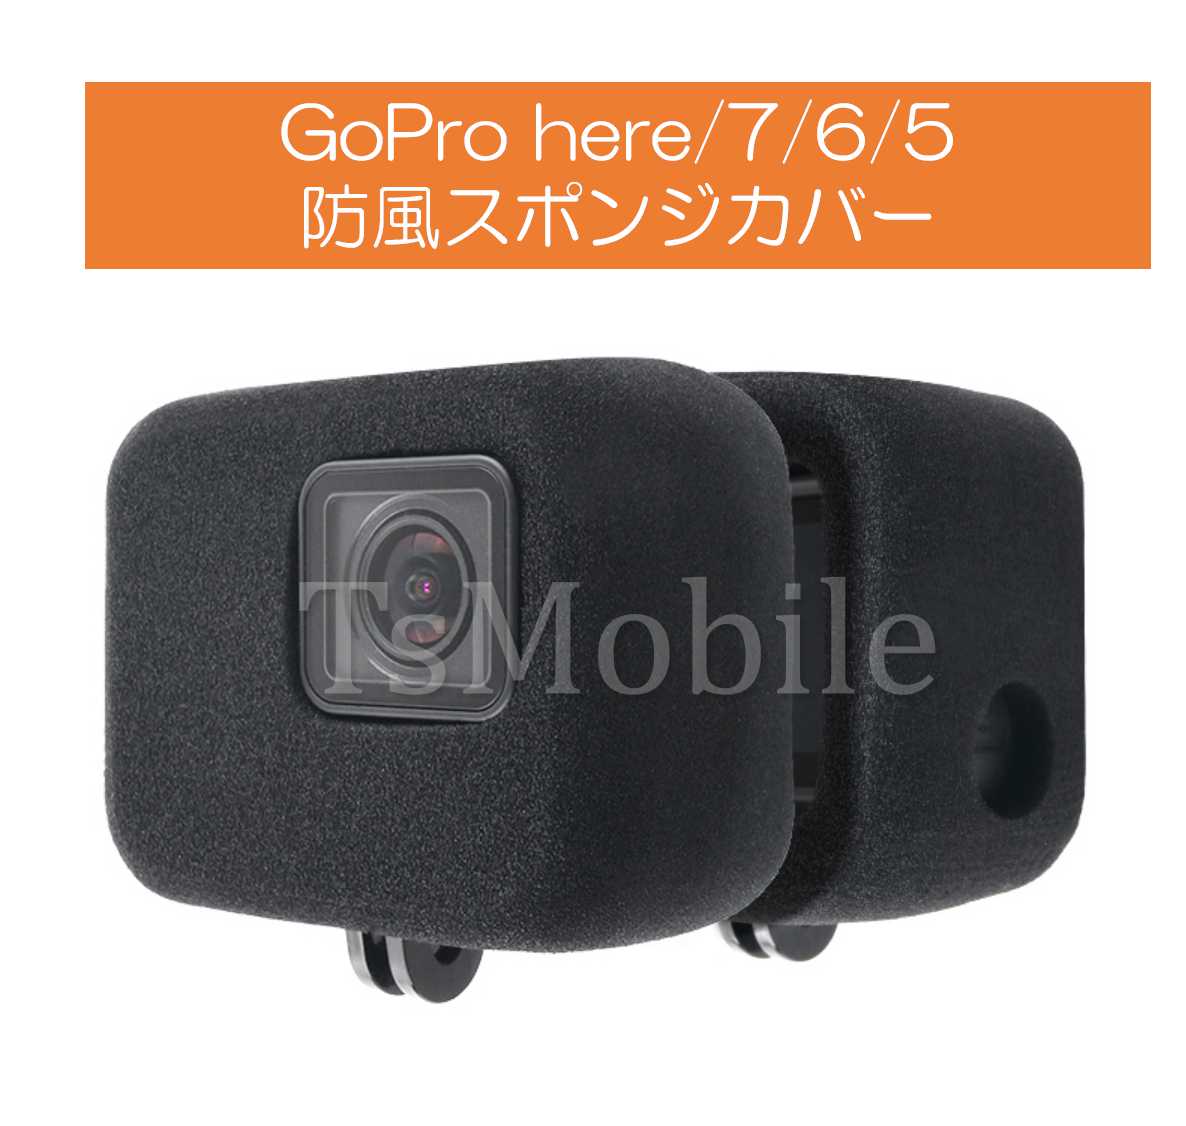 GoPro HERO7/HERO6/HERO5 アクセサリー 防風スポンジカバー 騒音防止 録音ノイズ対策 防塵 保護 防風カバー ケース